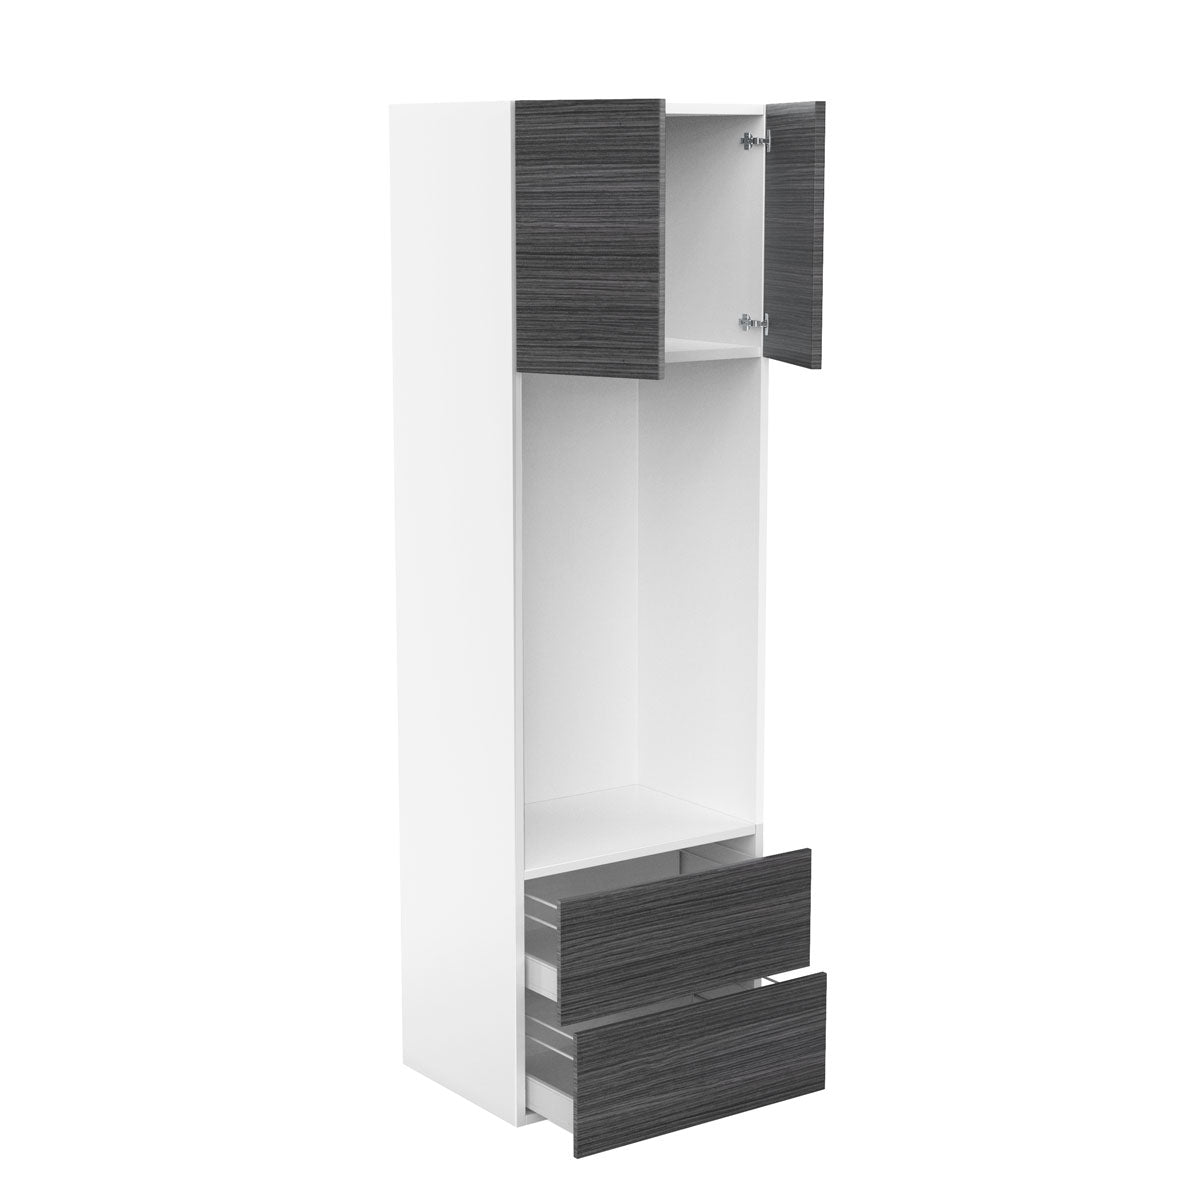 RTA - Dark Wood - Micro-Oven Tall Cabinet | 30"W x 84"H x 23.8"D